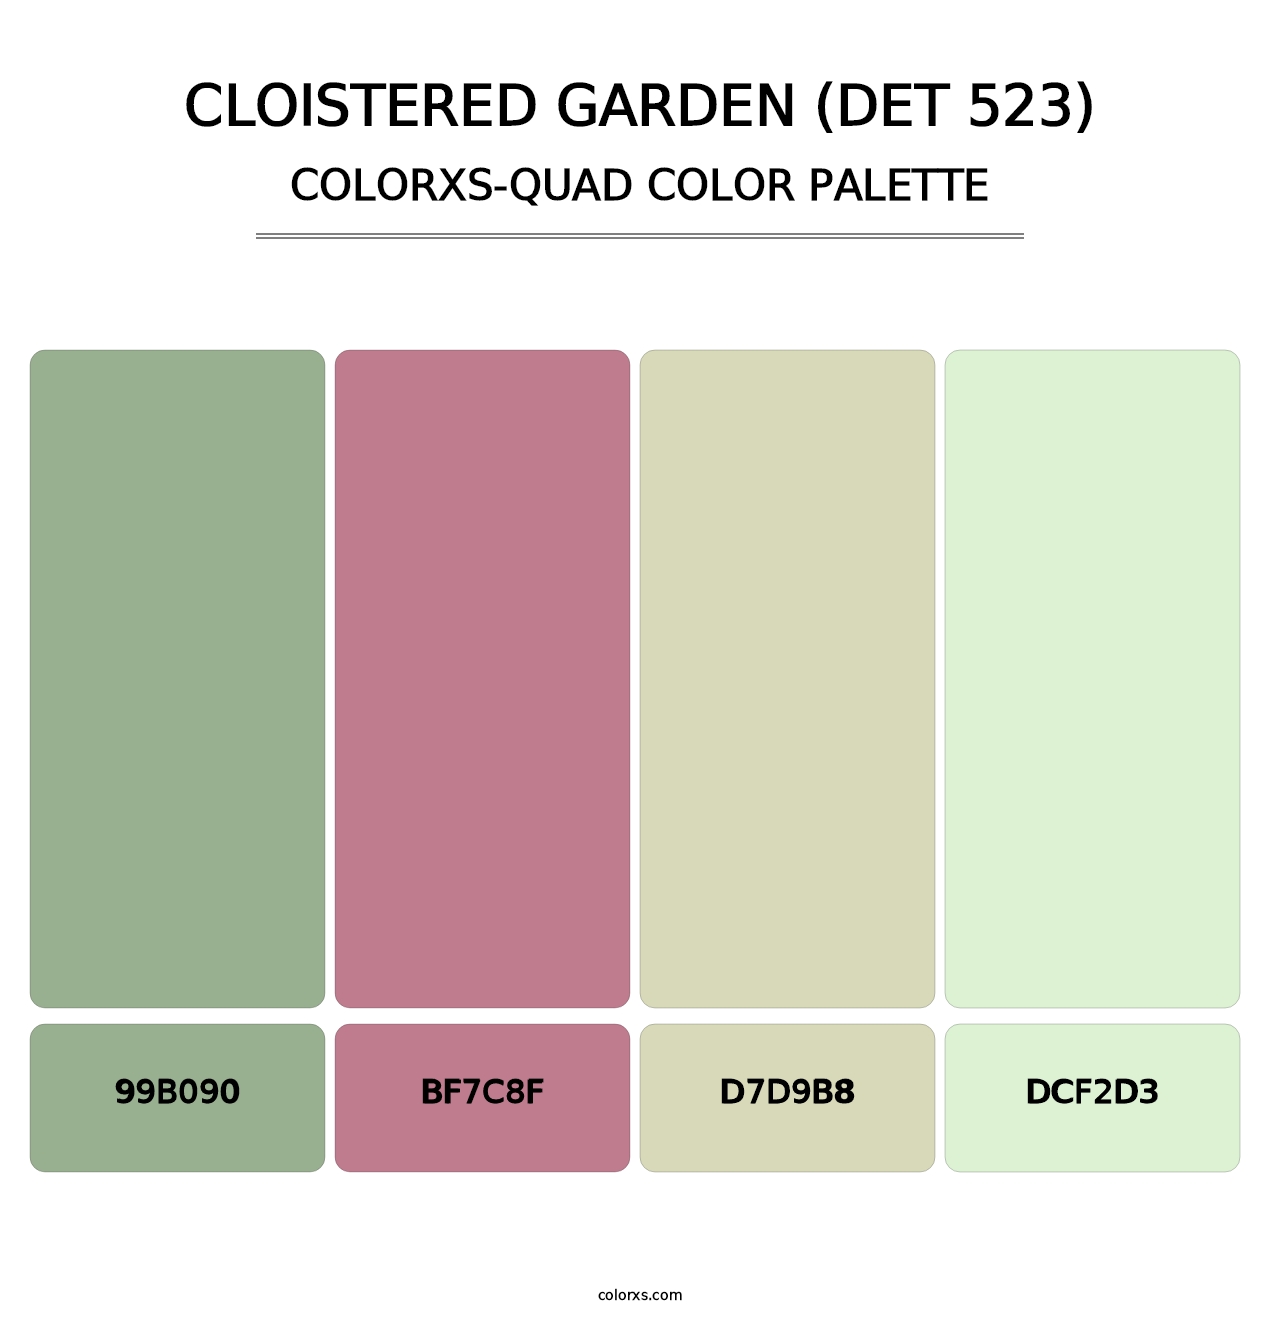 Cloistered Garden (DET 523) - Colorxs Quad Palette